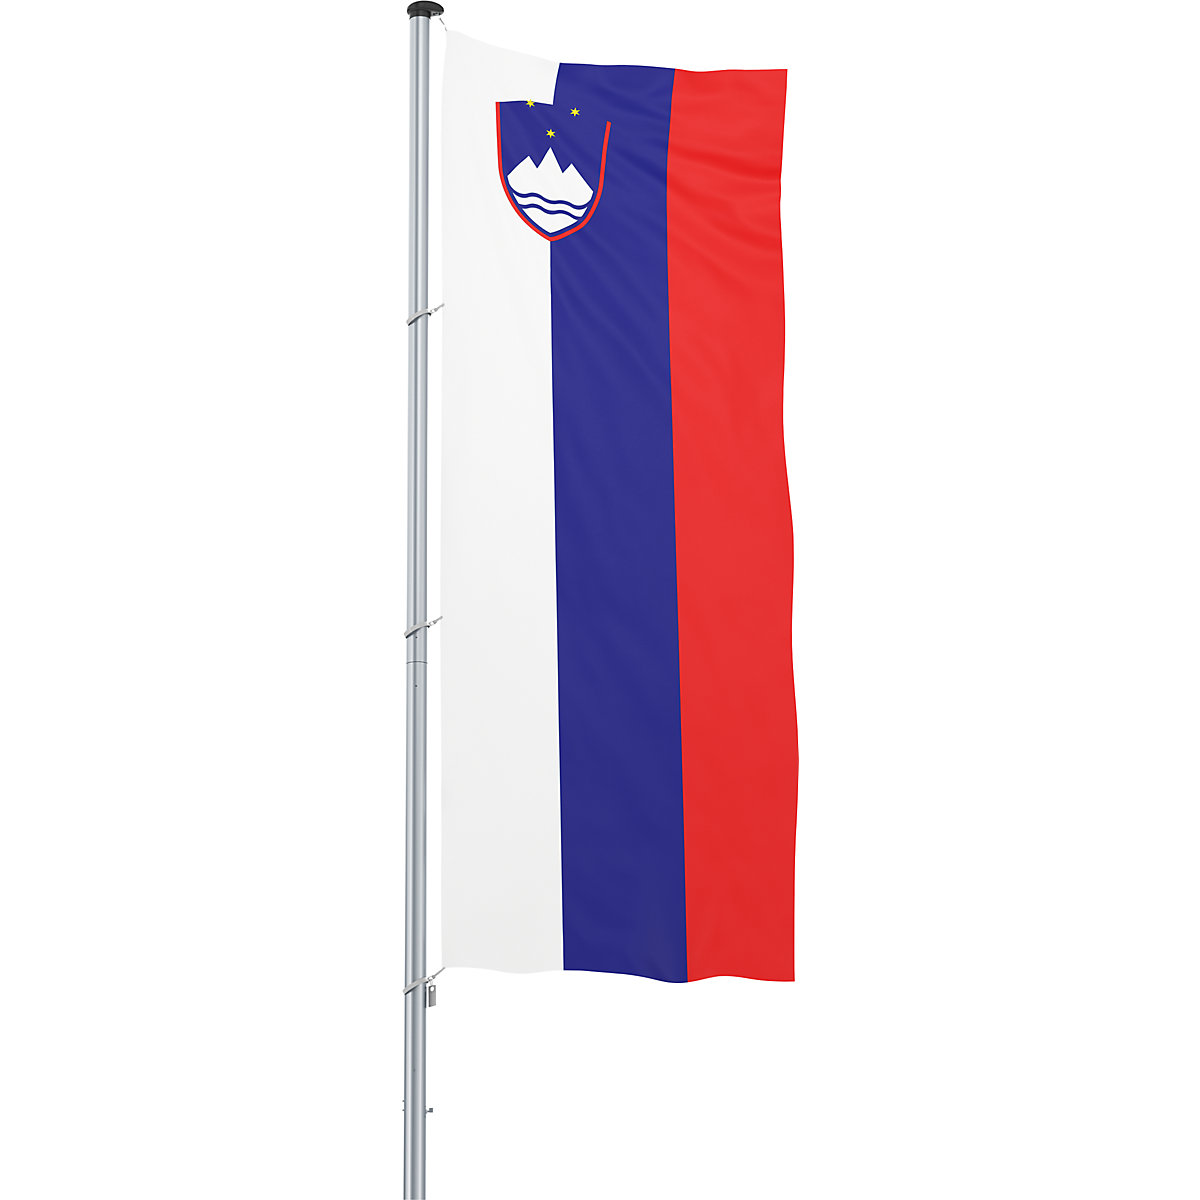 Bandeira para içar/bandeira nacional – Mannus, formato 1,2 x 3 m, Eslovénia-27